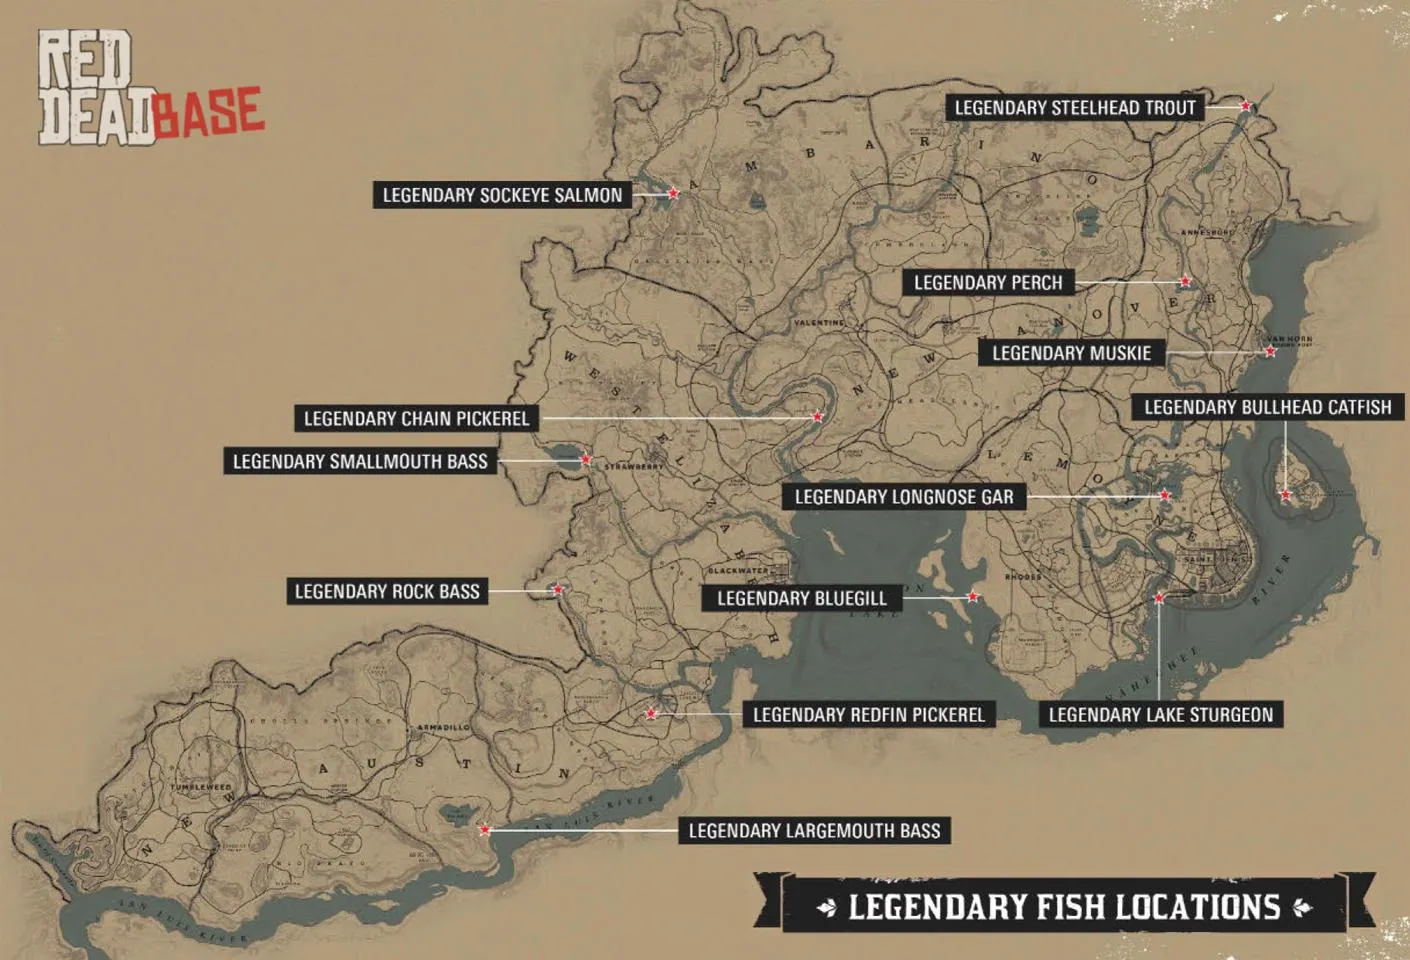 Legendary Longnose Gar - Map Location in RDR2